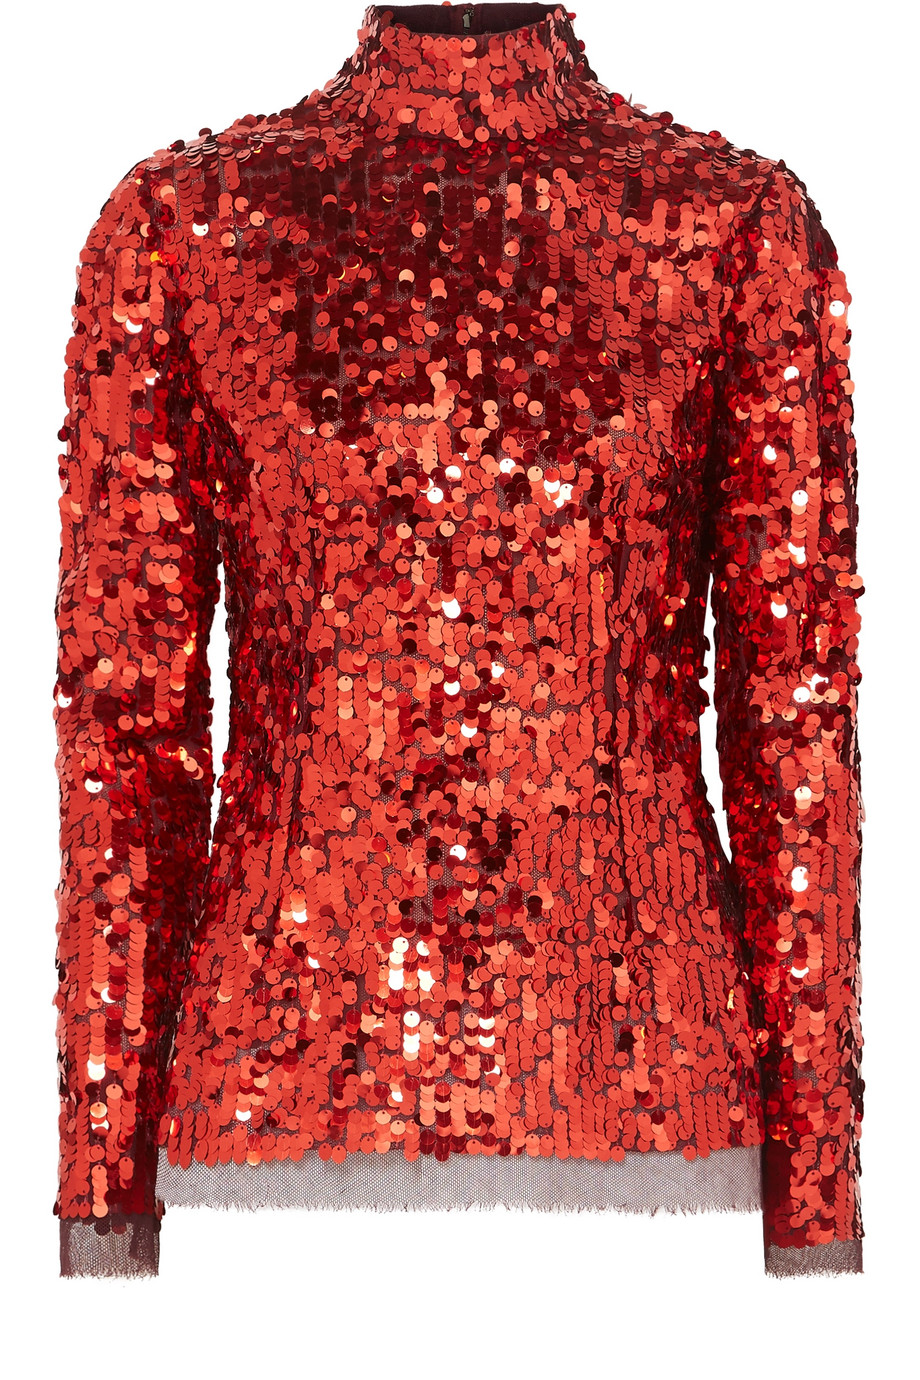 Κόκκινη μπλούζα με όρθιο γιακά-Dolce and Gabbana